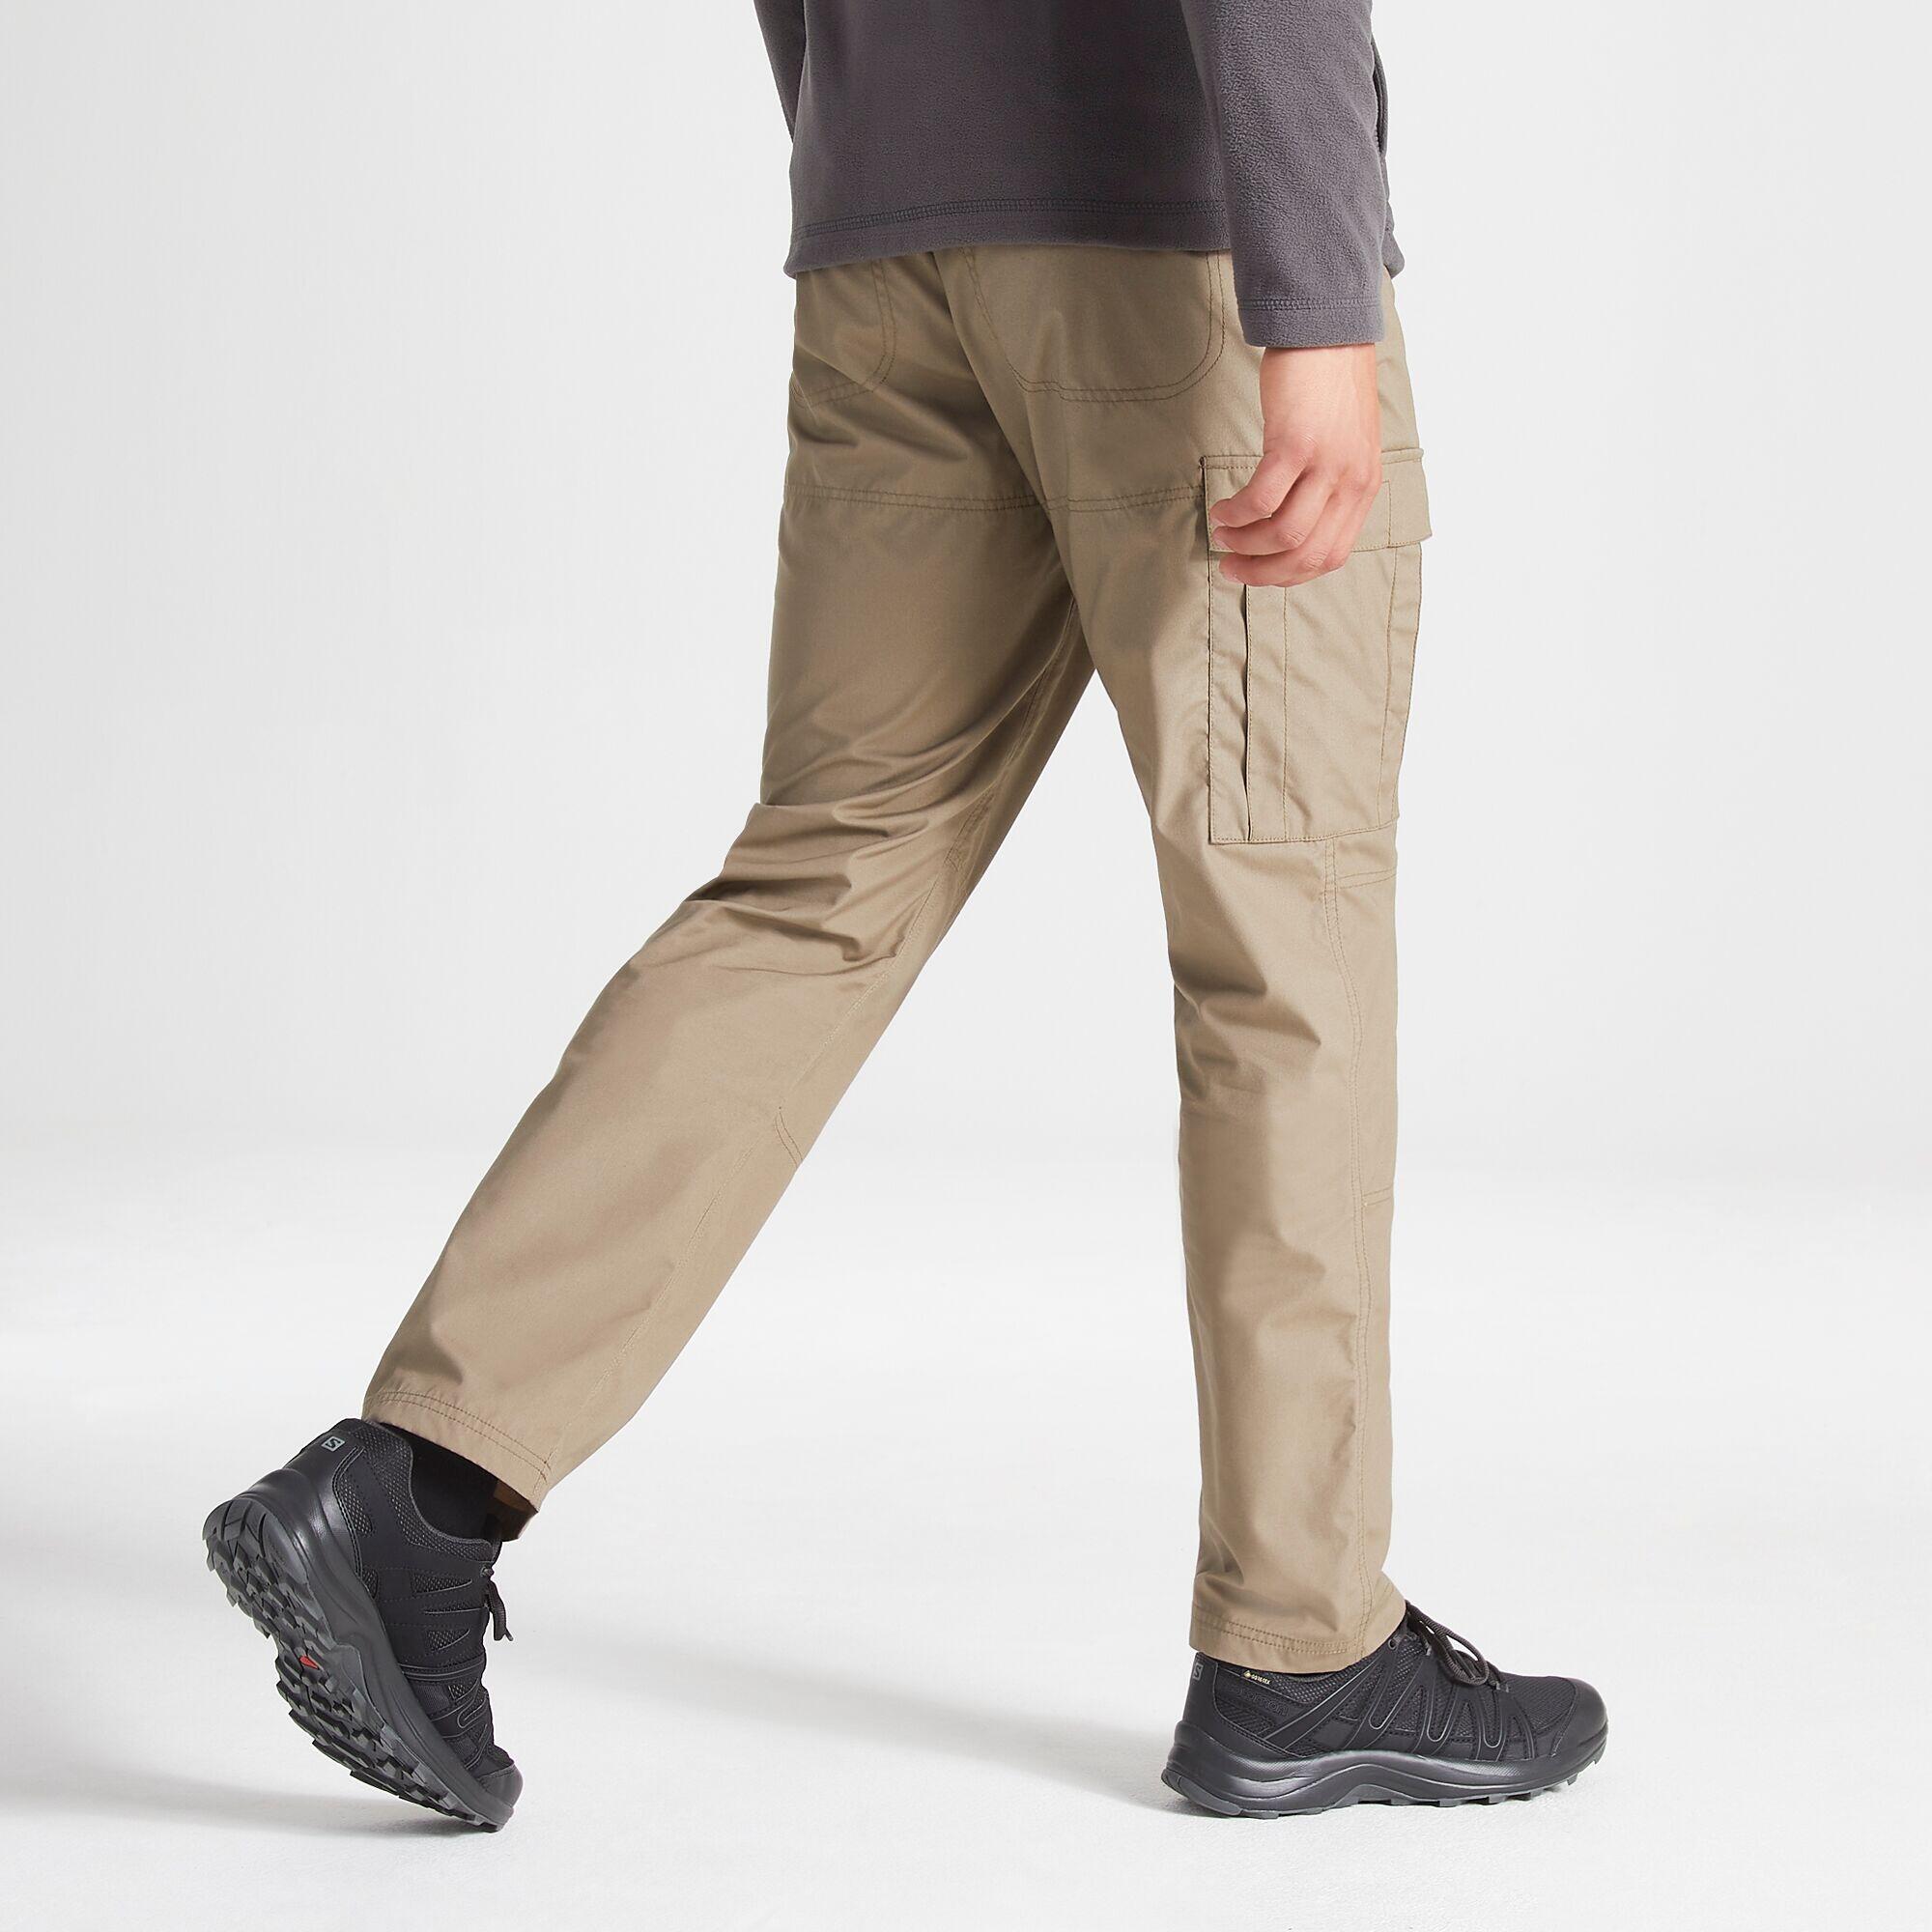 Men's Expert Kiwi Tailored Trousers 4/4